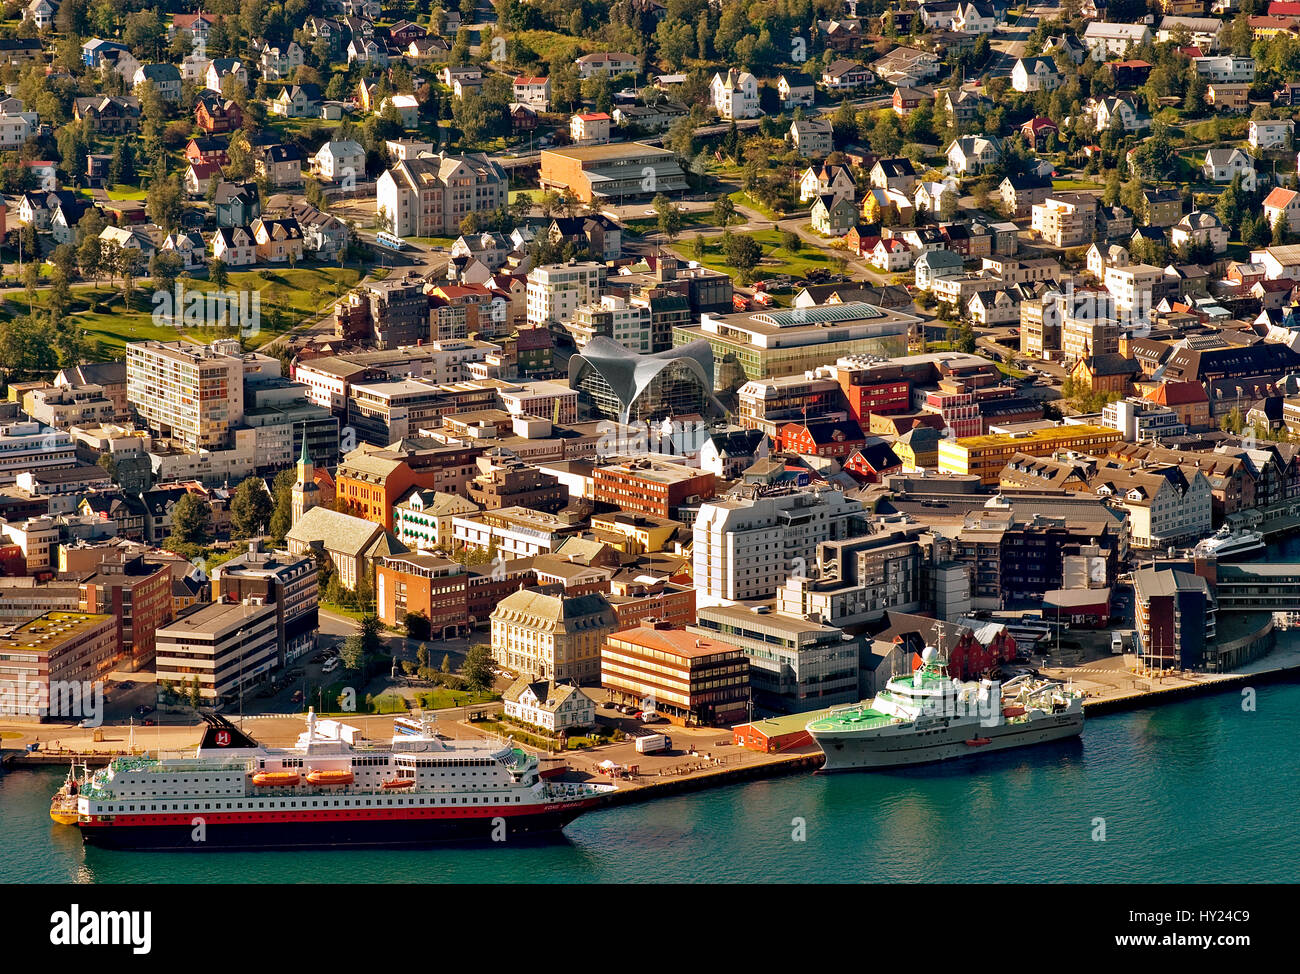 Questo stock foto mostra la città e il porto di Tromsoe nel nord della Norvegia. L'immagine è stata presa dal Monte Storsteinen che è appena al di sopra del c Foto Stock